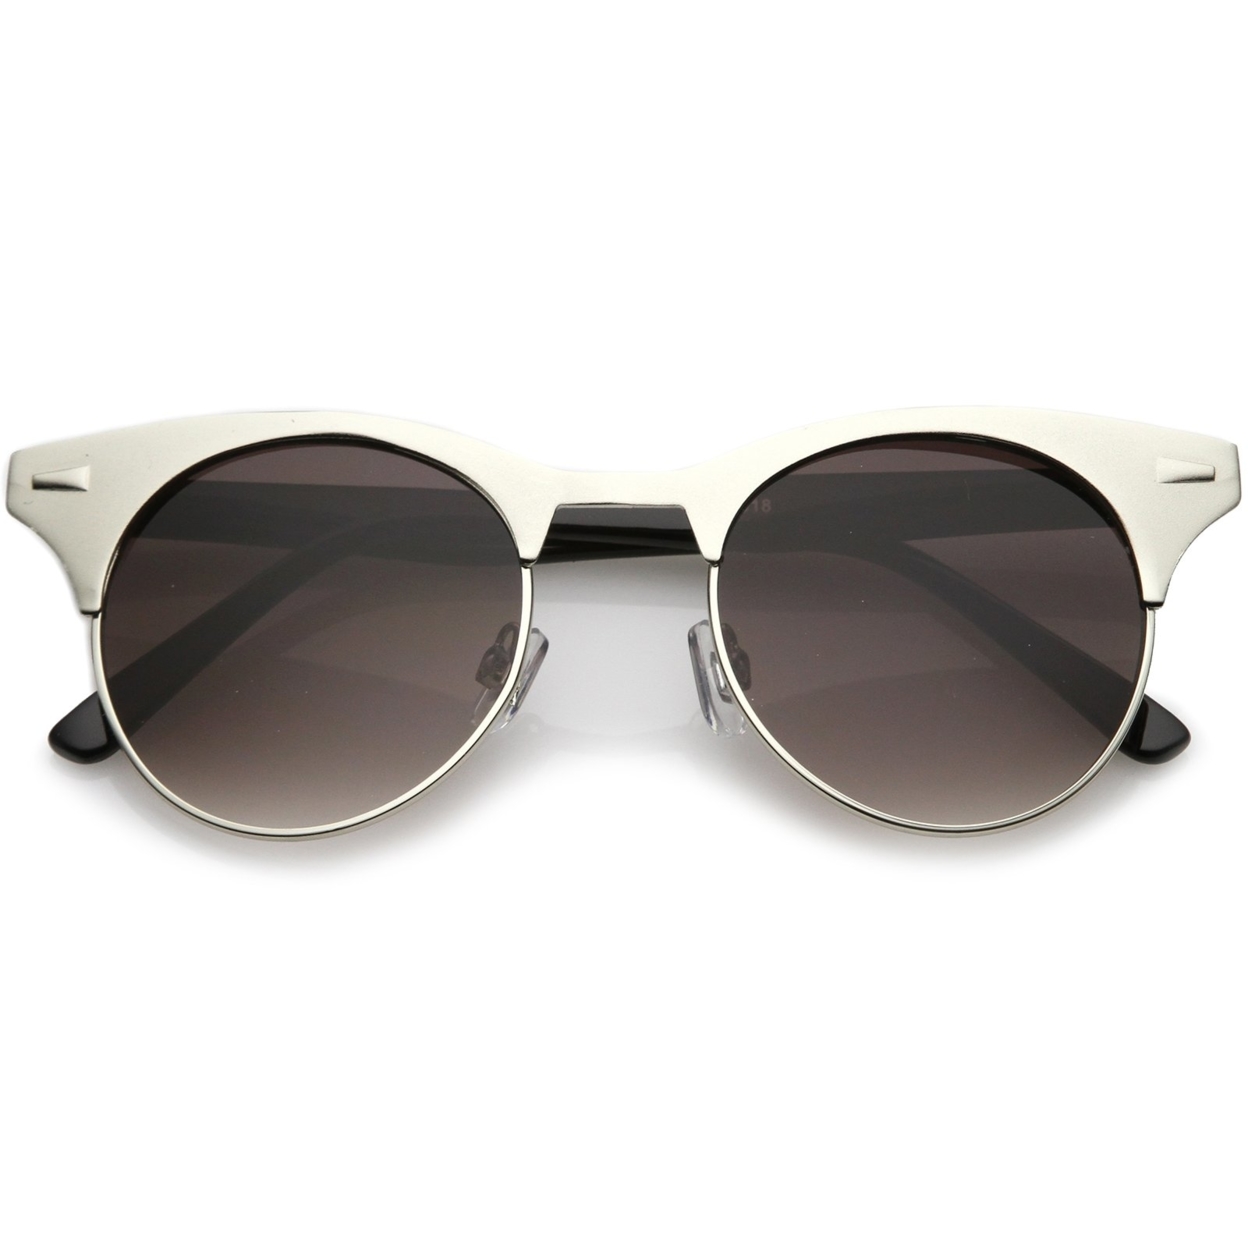 Women's Matte Finish Horn Rimmed Round Flat Lens Cat Eye Sunglasses 49mm - Silver-Black / Lavender